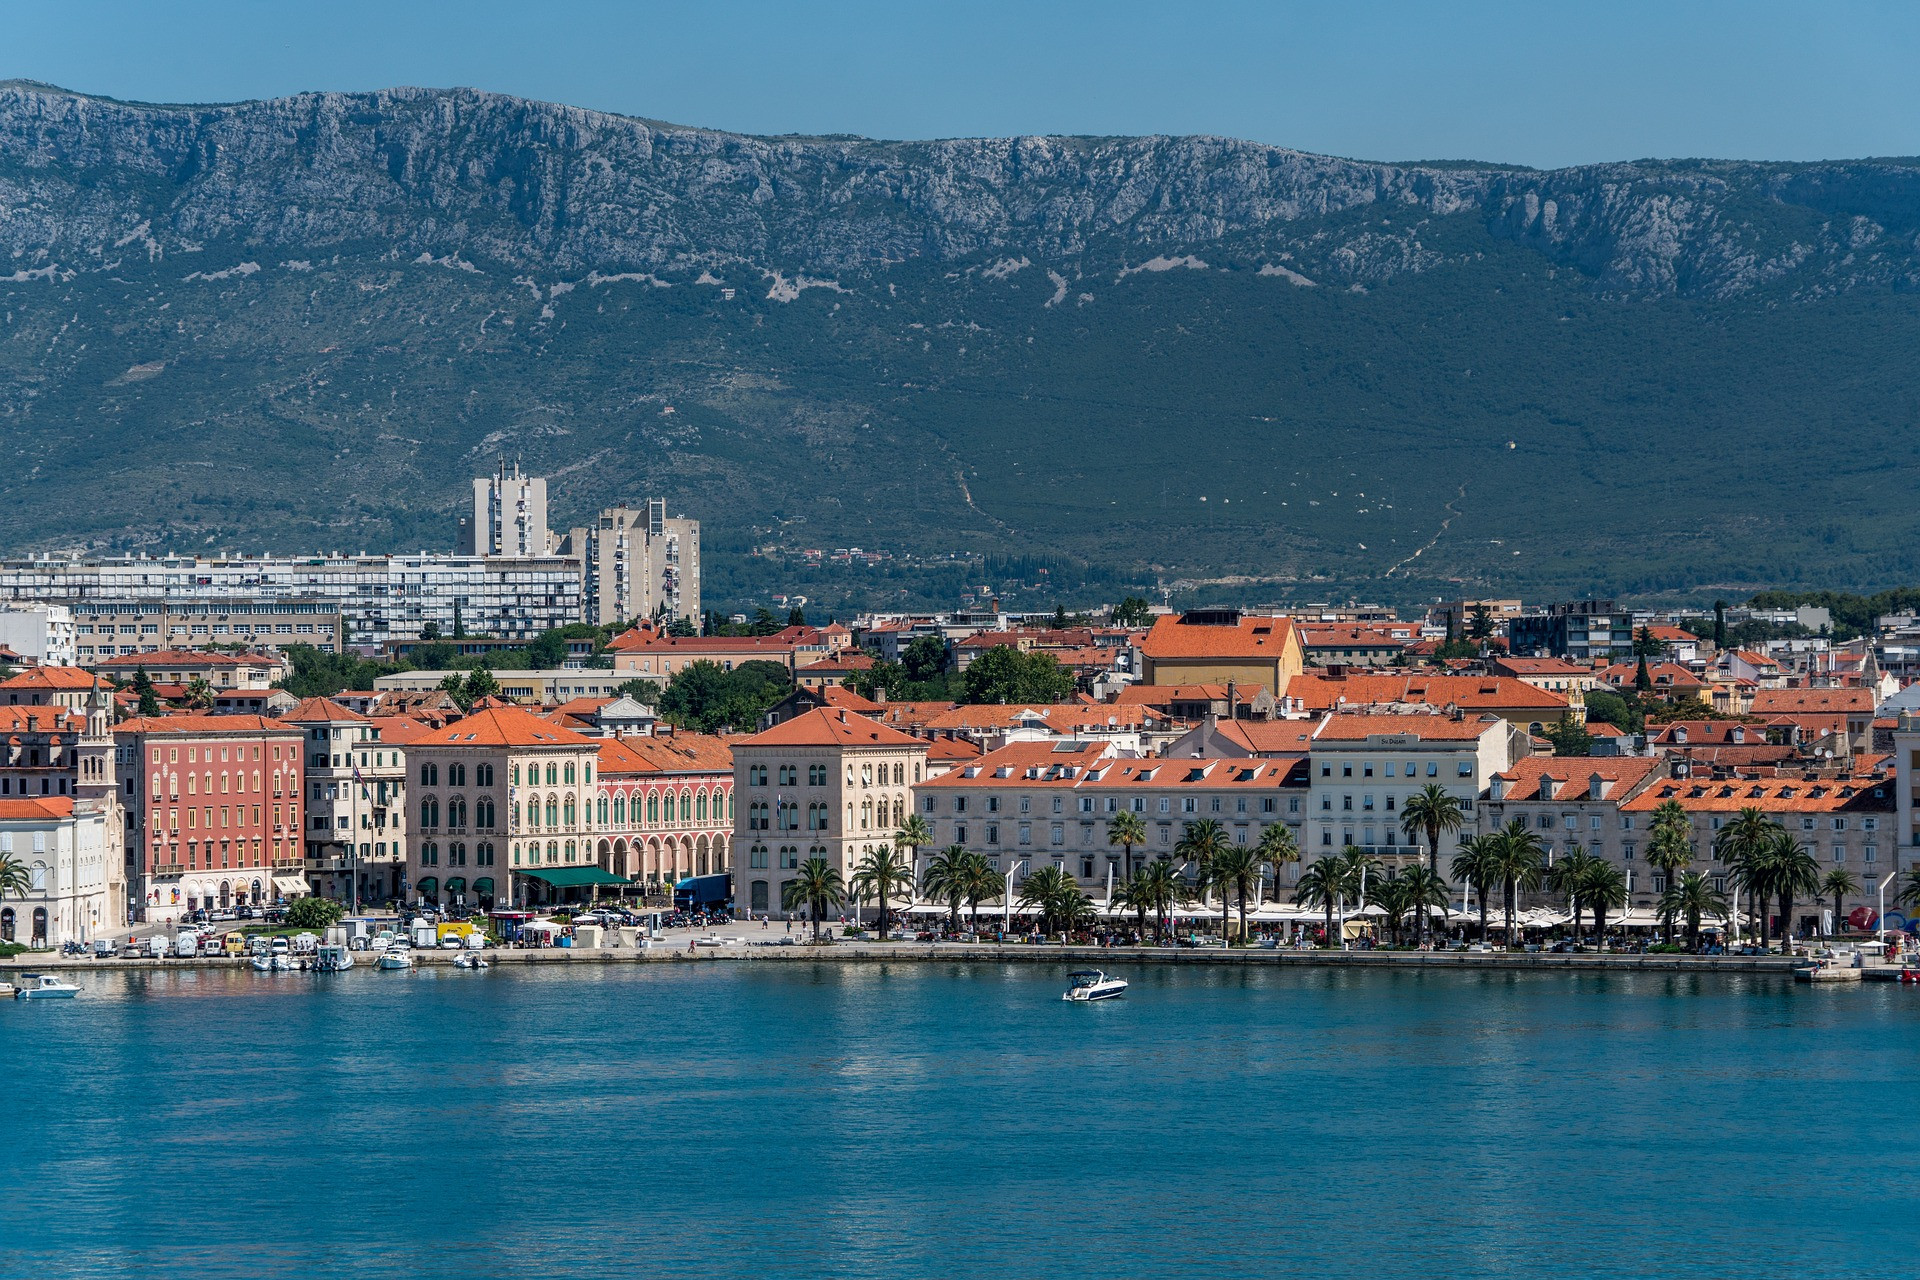 Chorvátske historické, prímorské mesto Split leží na pobreží Jadranského mora, v malebnej oblasti starovekých rímskych ruín, živých pláží a očarujúcej reštaurácie. Zvyšky minulosti mesta ako nehnuteľnosť Ríma, Francúzska, Benátska, Rakúska, Talianska a Juhoslávie zostávajú v zozname kultúrnych pamiatok UNESCO. Poprechádzajte sa po pobrežnej promenáde, kde sa páry môžu zastaviť na nápoje v jednej z mnohých kaviarní. Jedna vec je istá, je to pôvabné mesto, kamkoľvek pôjdete.